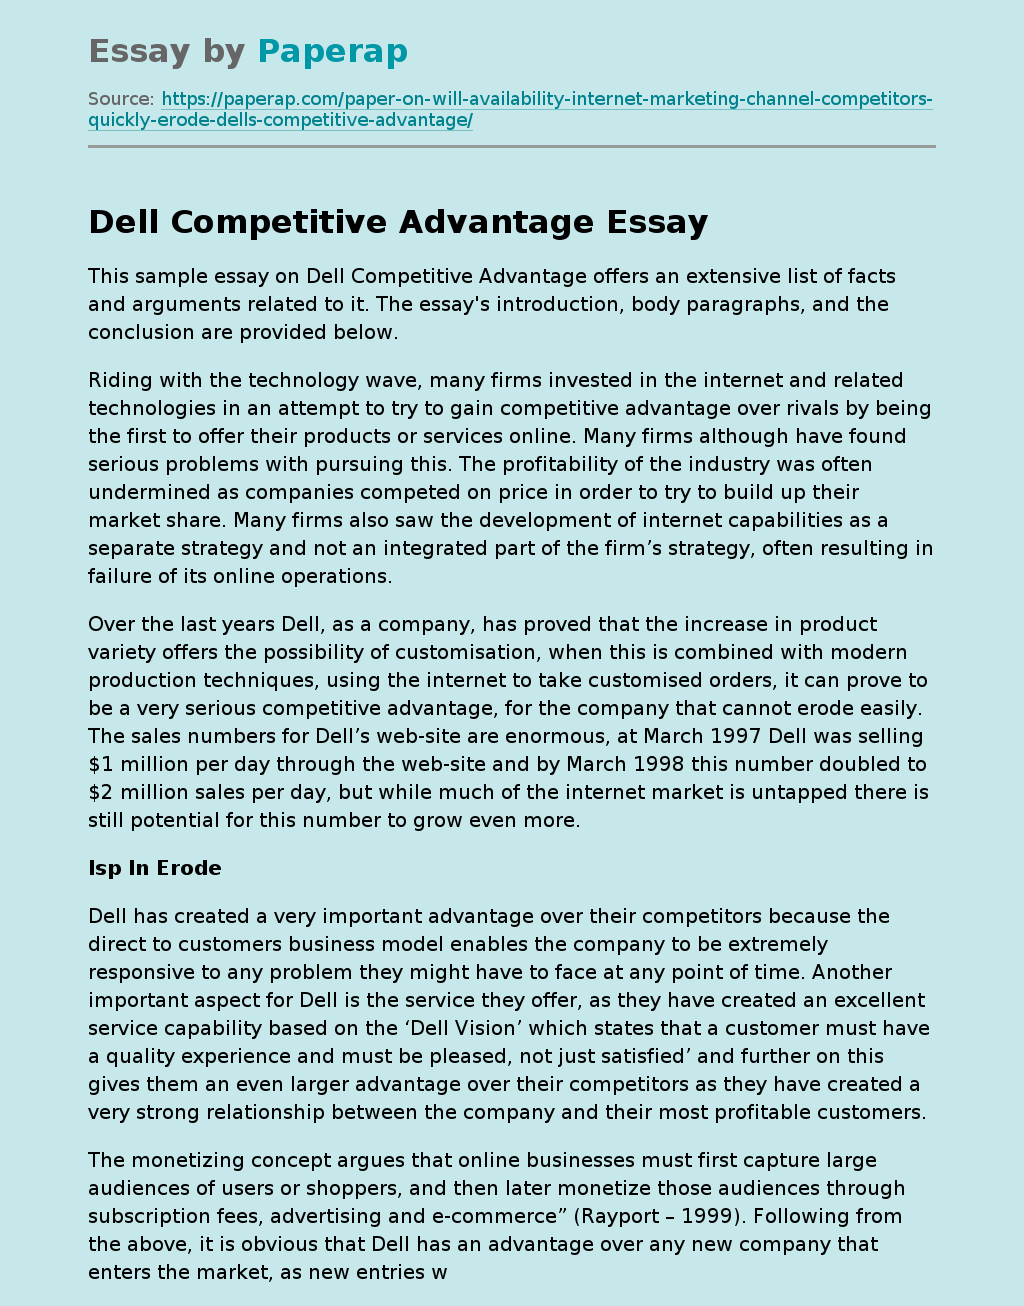 Sample Essay on Dell Competitive Advantage